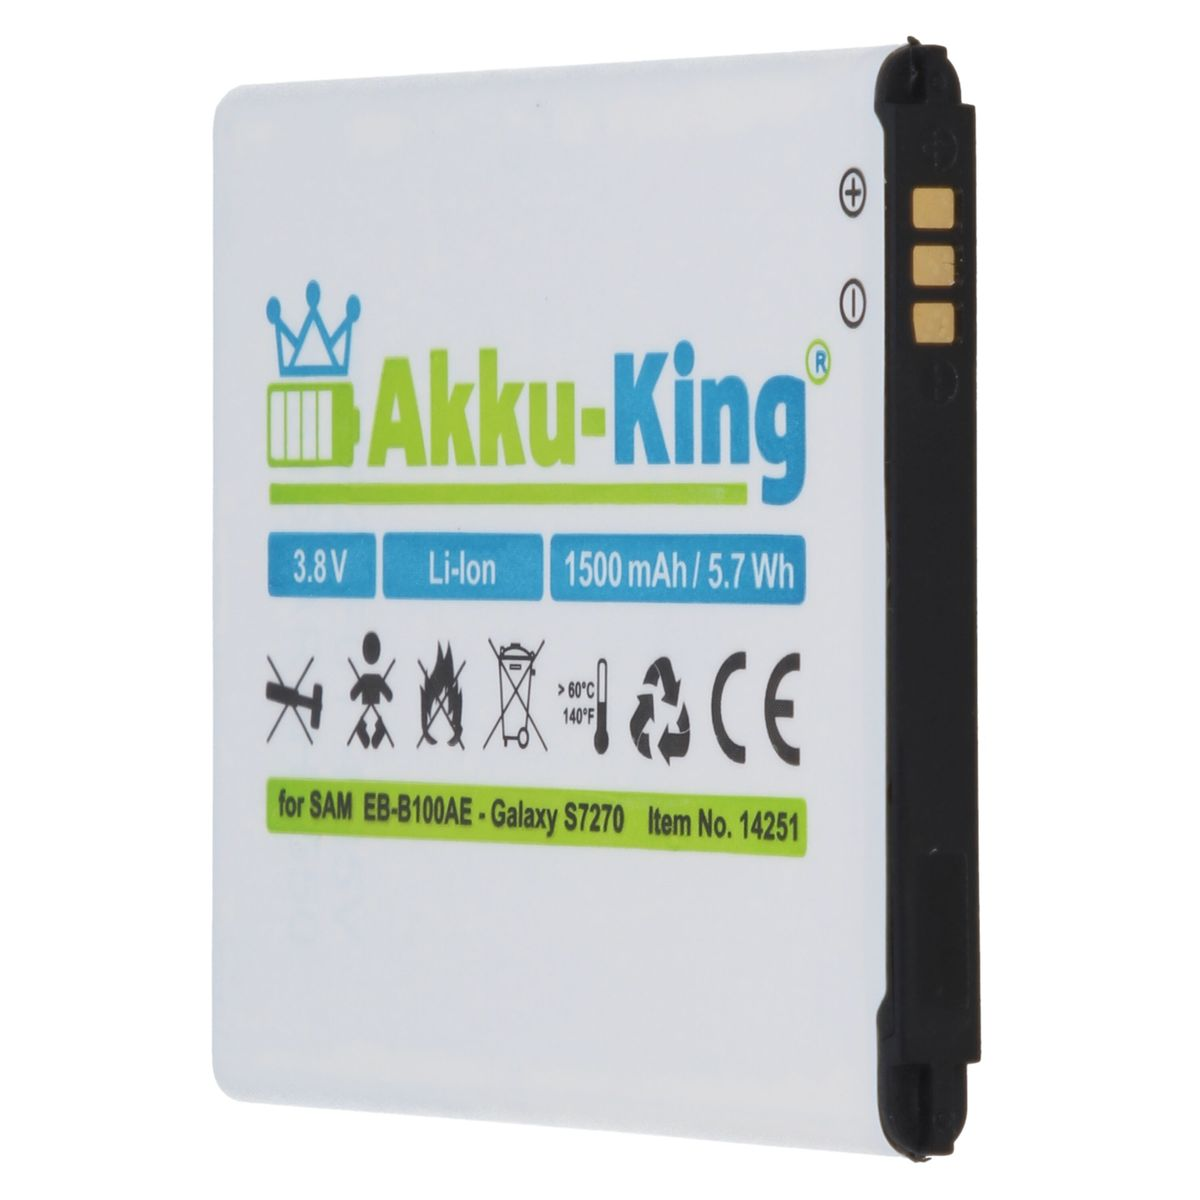 EB-B100AE Li-Ion kompatibel Akku mit 1500mAh Handy-Akku, 3.8 AKKU-KING Volt, Samsung